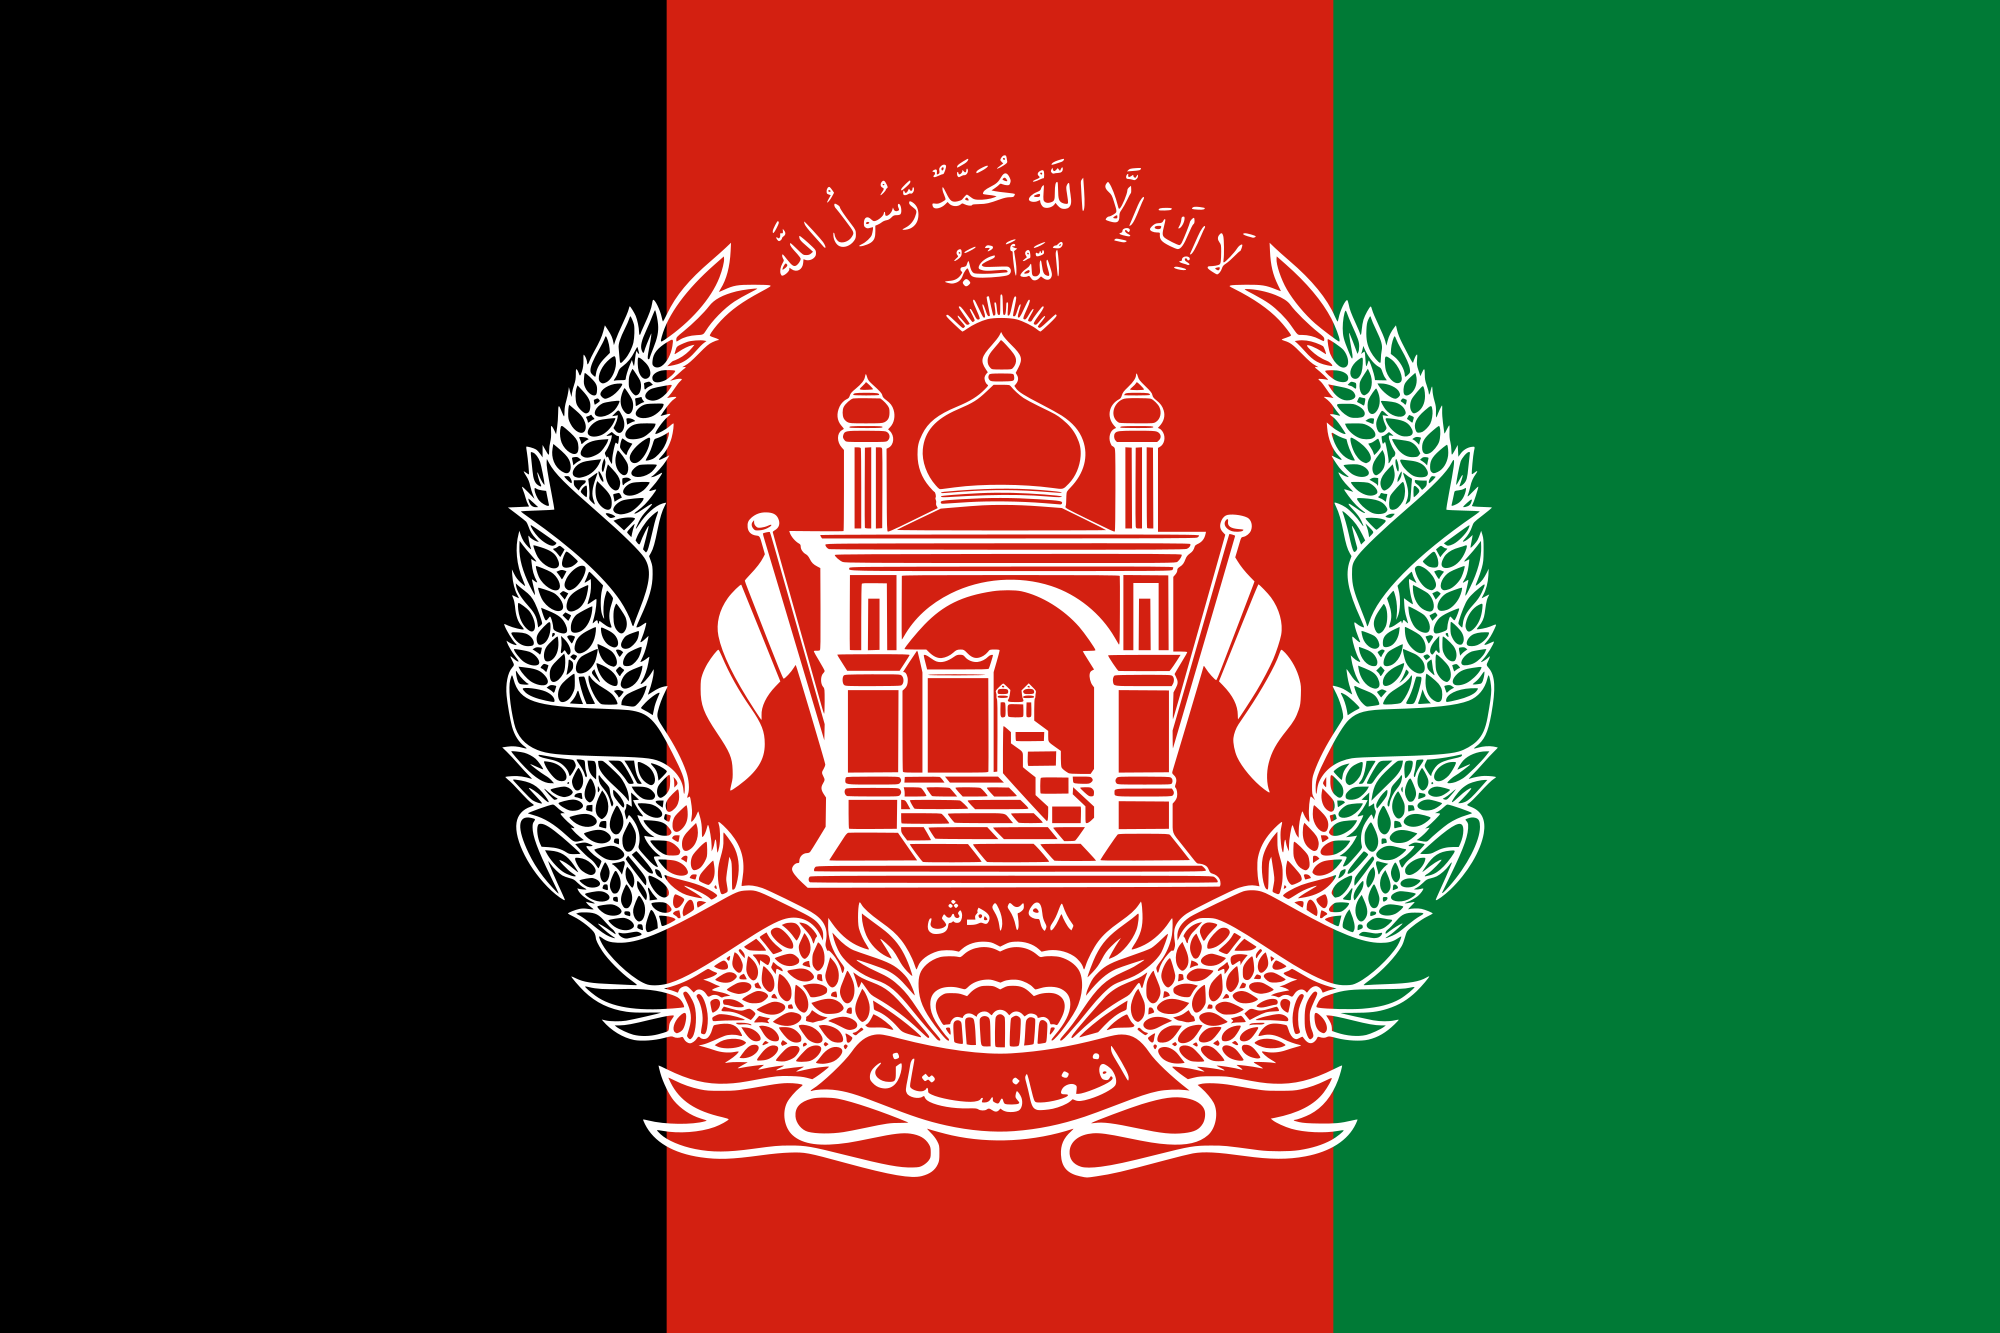 अफगानिस्तानमा राष्ट्रपतिय निर्वाचन सेप्टेम्बर २८ मा हुने